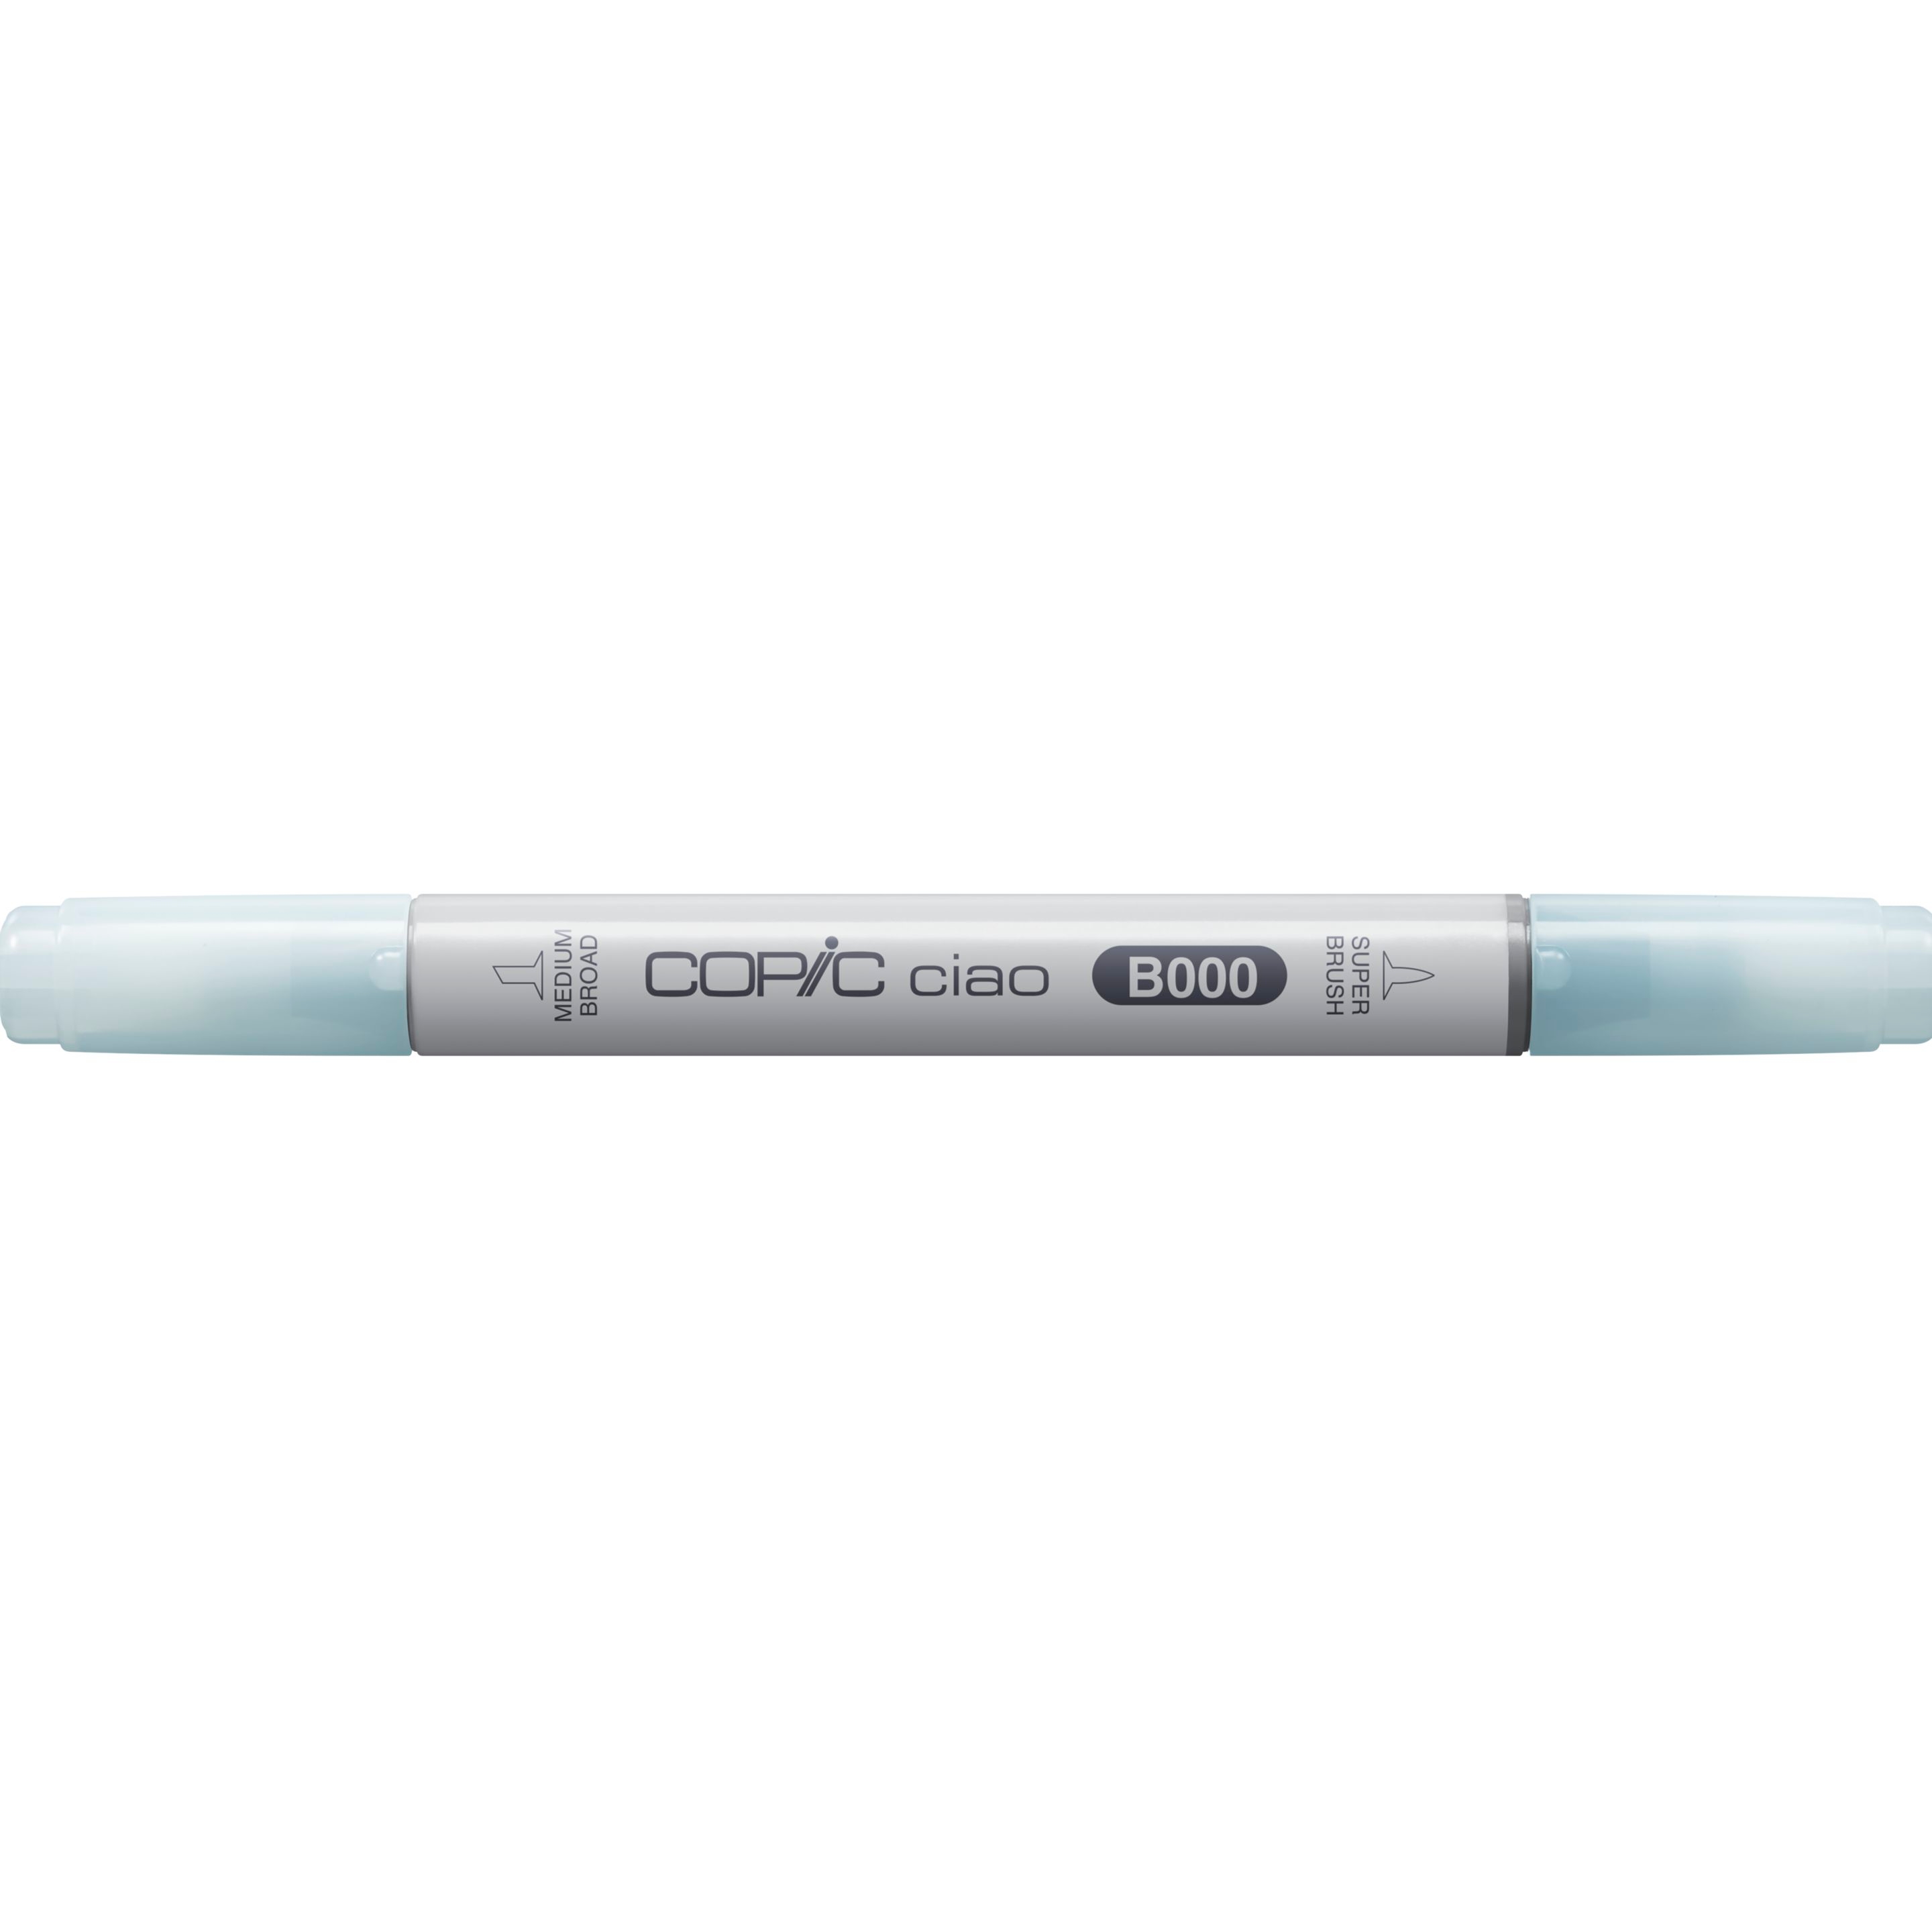 COPIC Marker Ciao 22075304 B000 - Pale Porcelain Blue